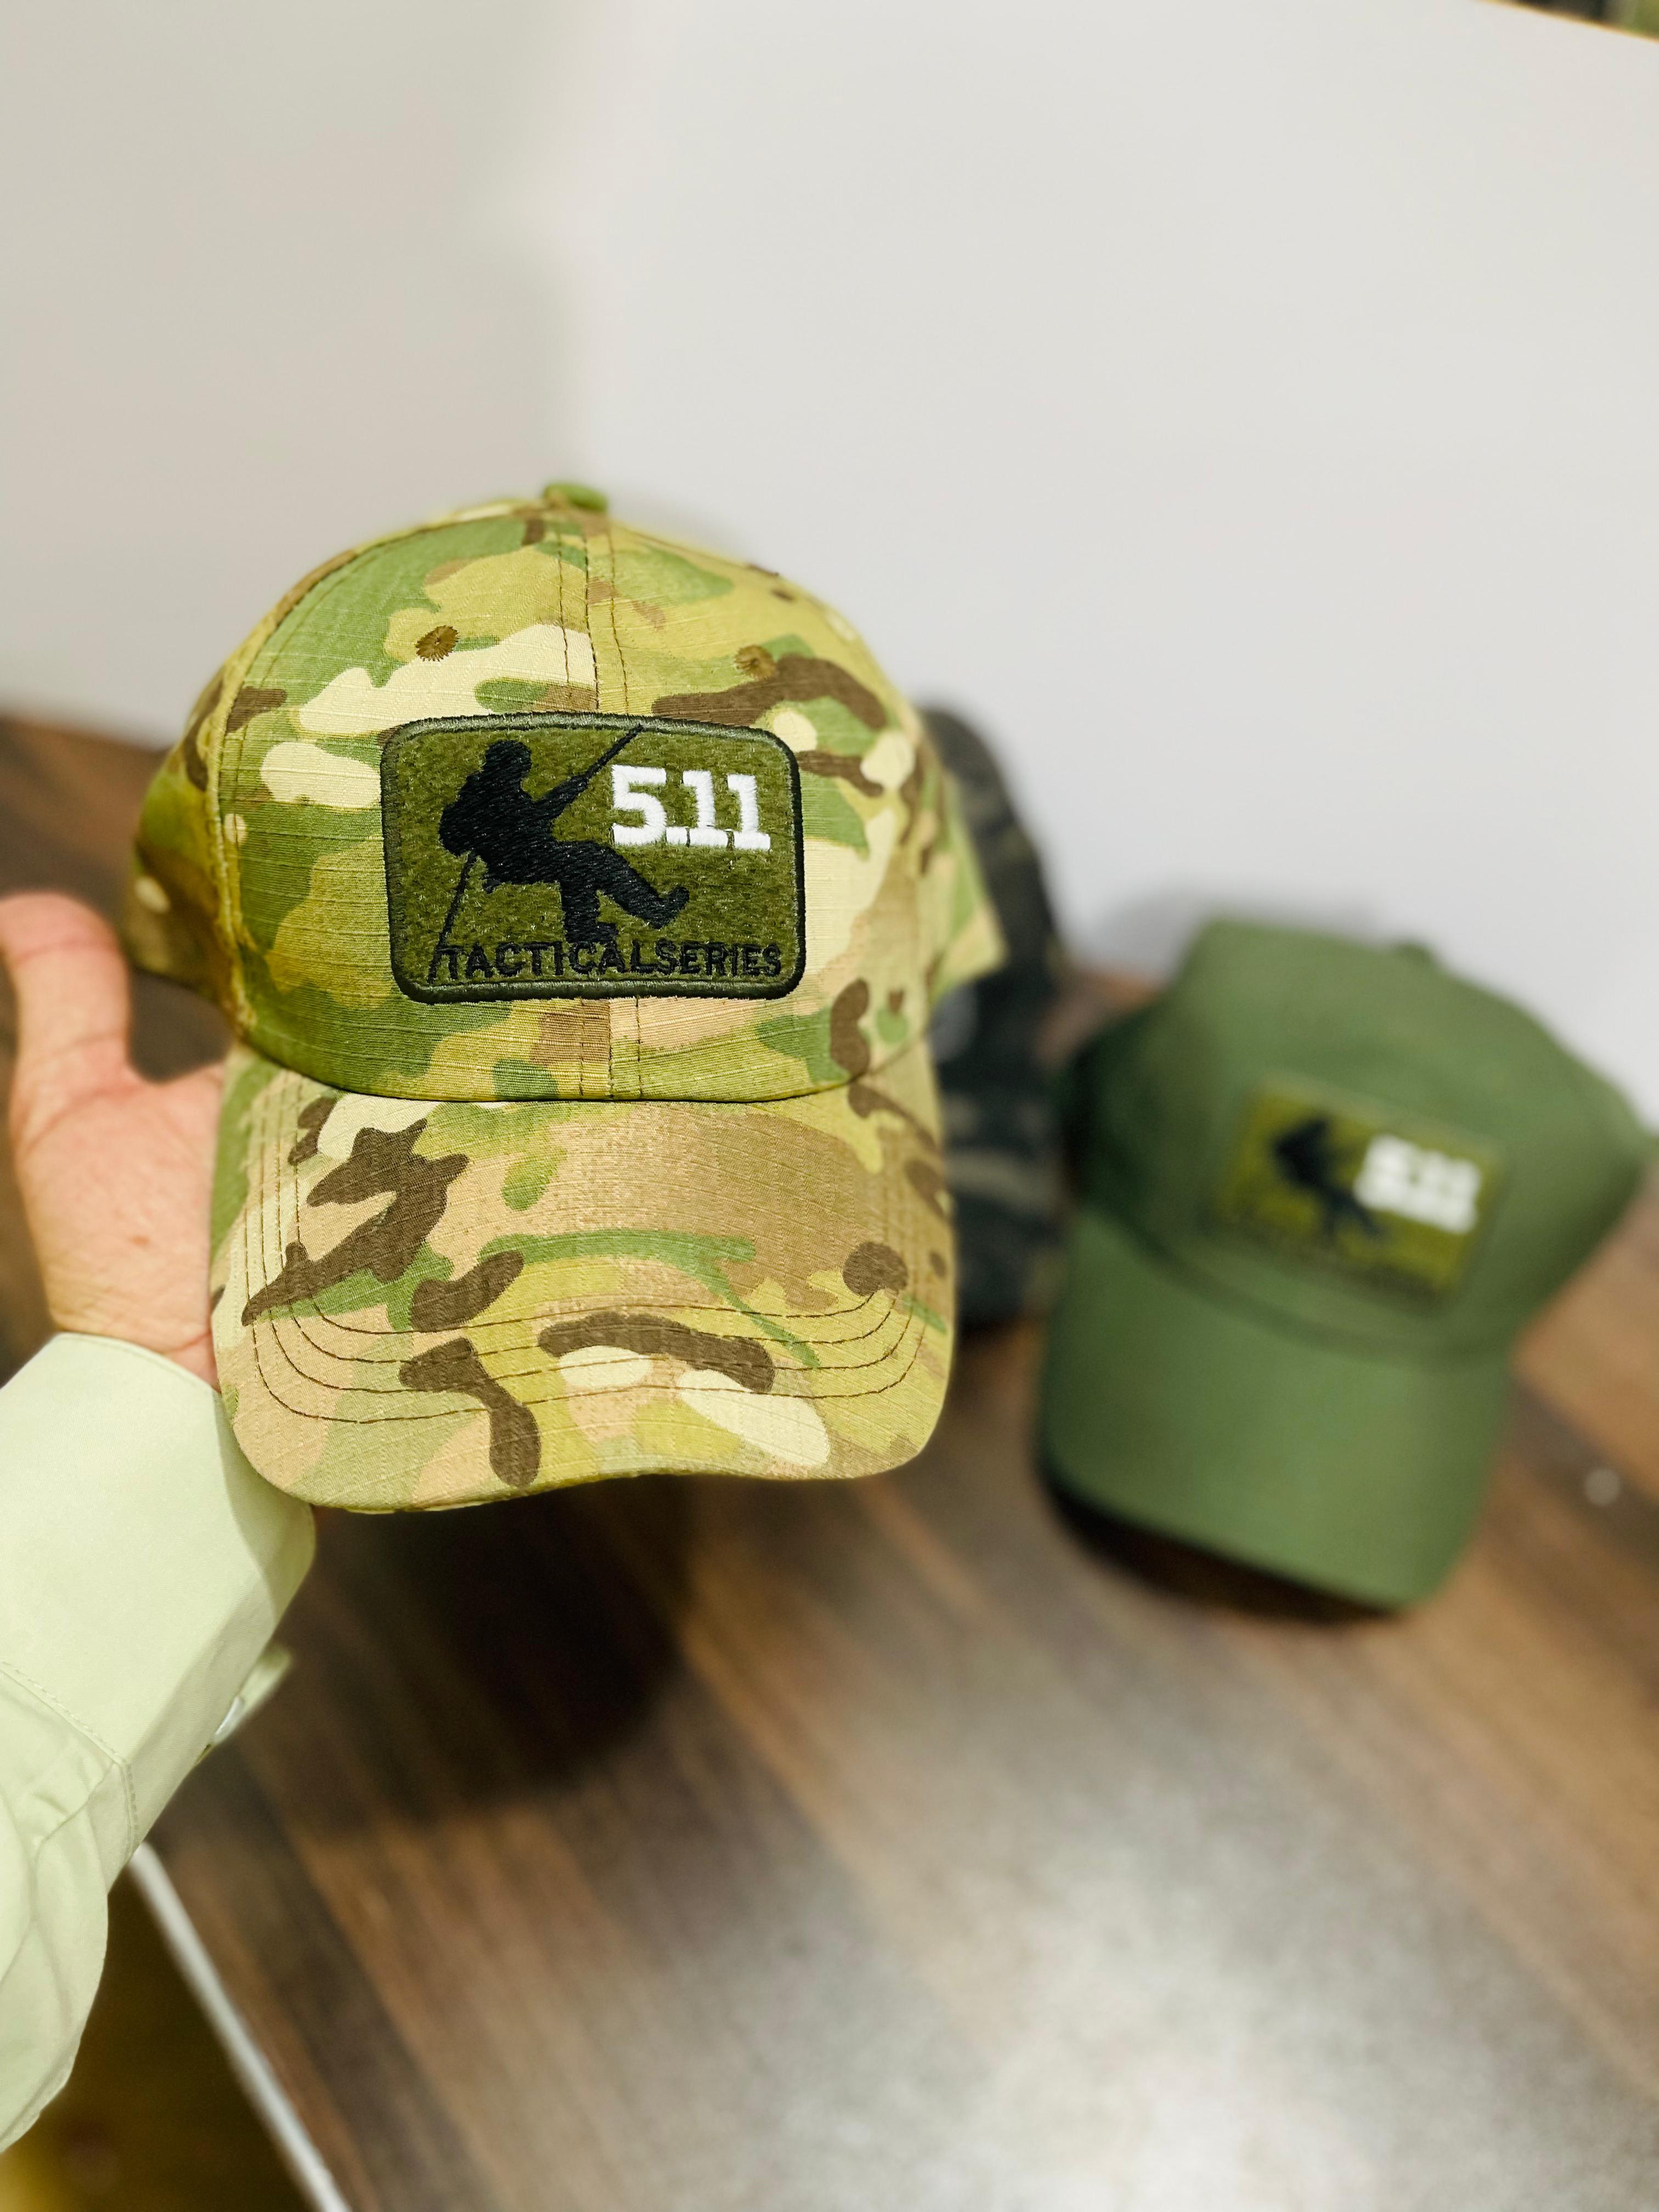 5.11 Tactical Series caps